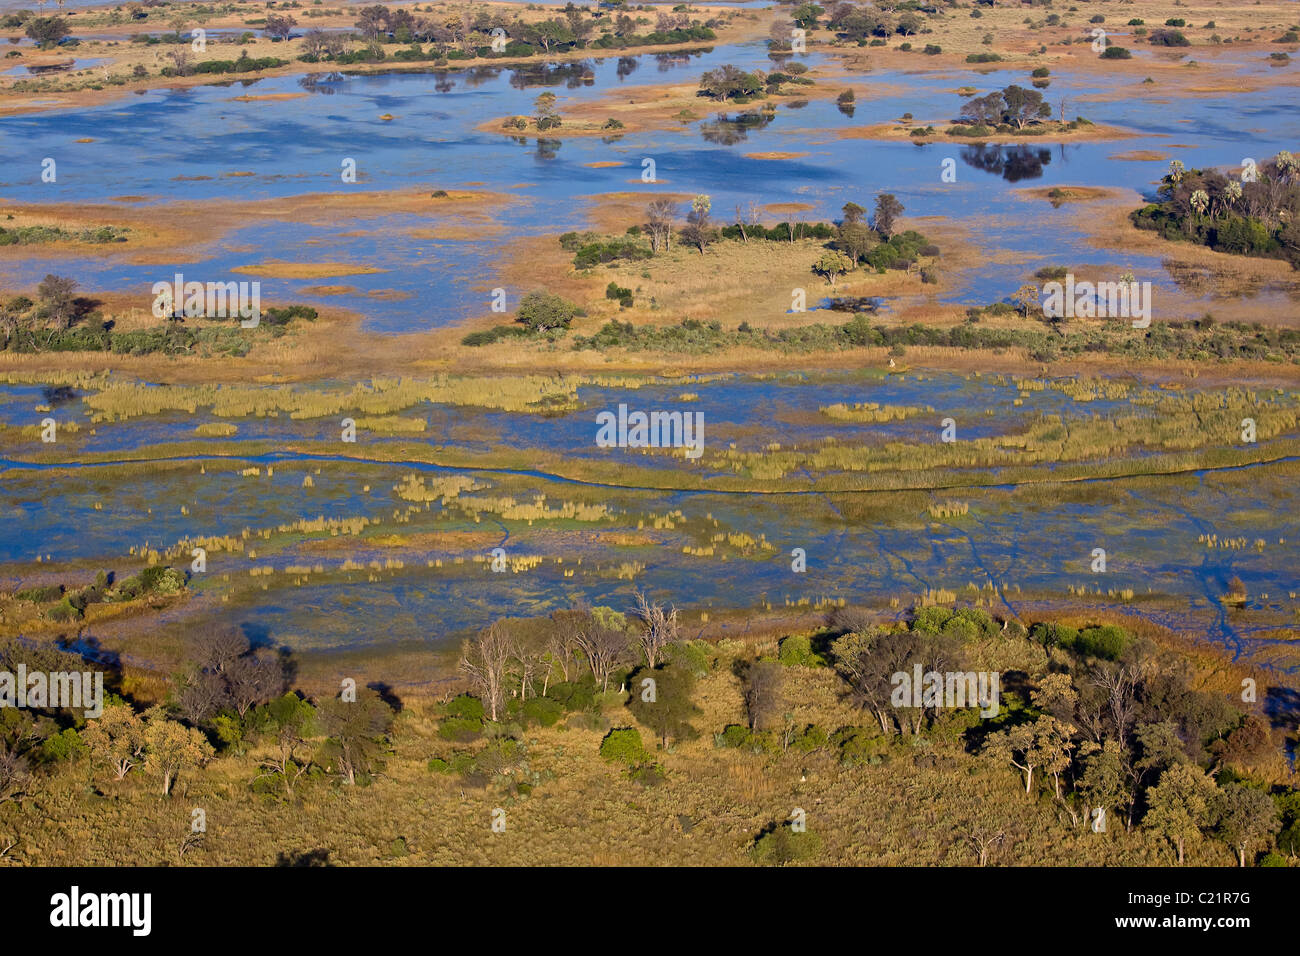 La rivière Okavango, vue aérienne Banque D'Images